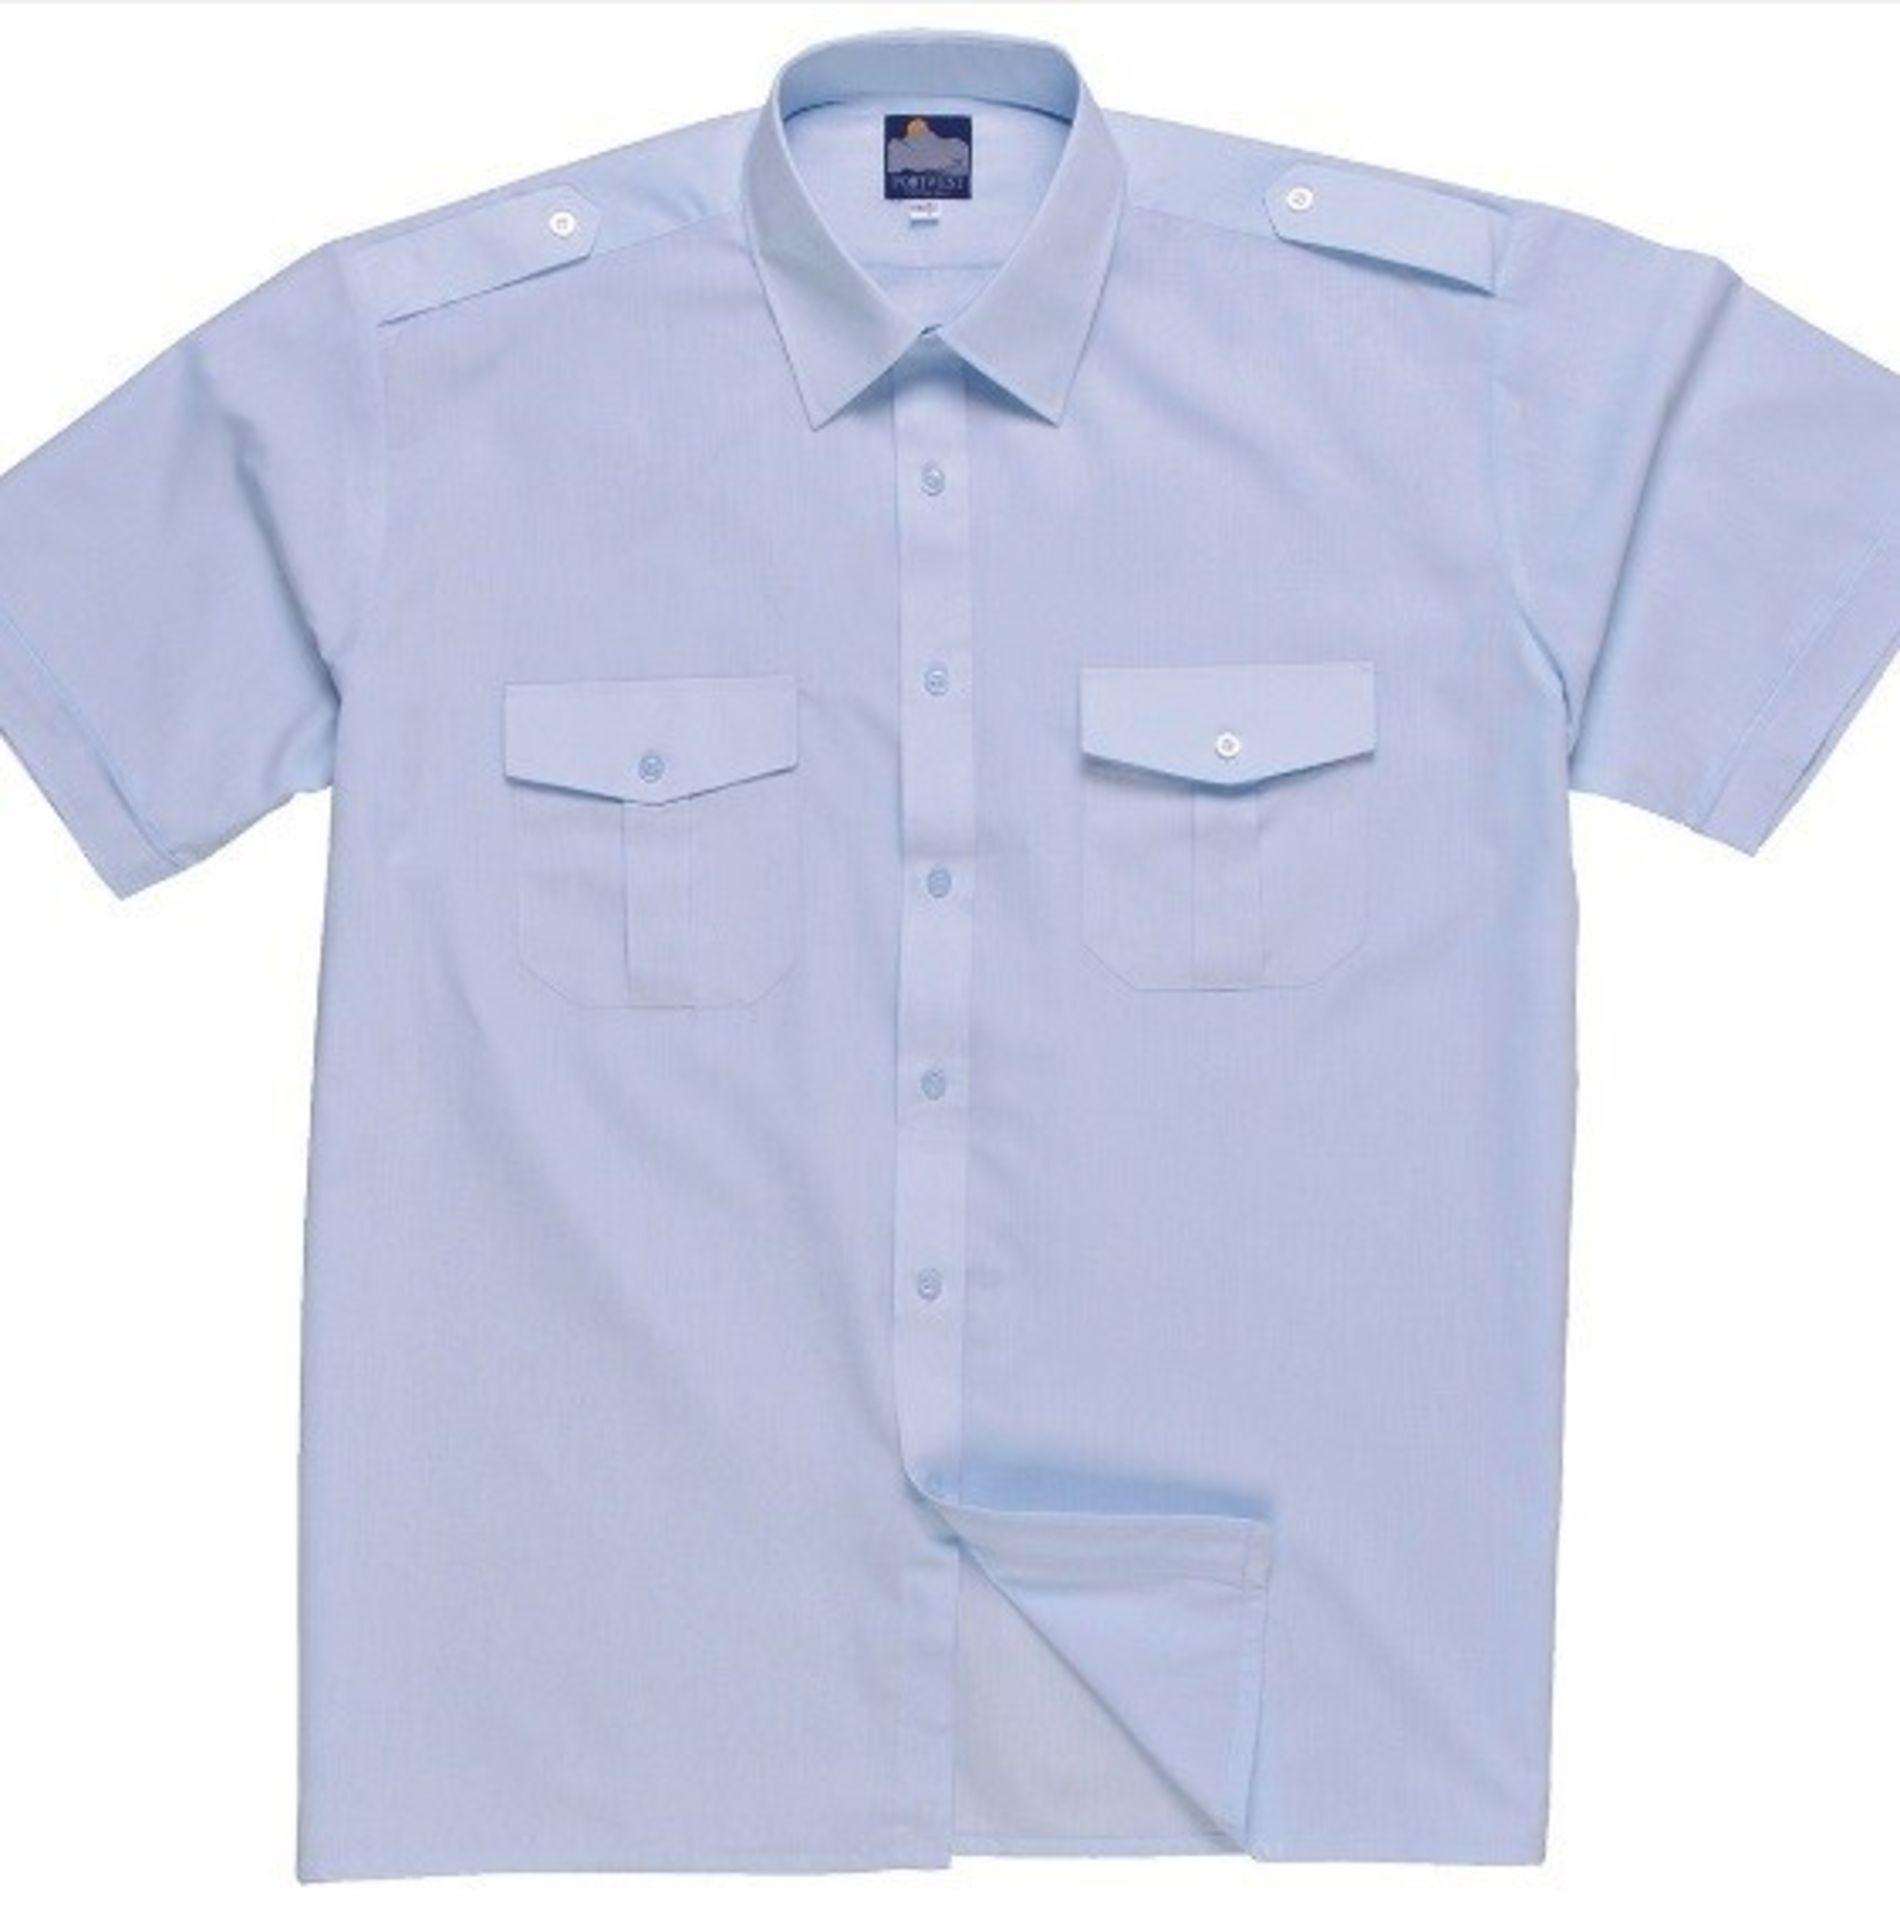 5 x Portwest Pilot Shirt Short Sleeve (Workwear) Colour: BLUE - Neck 20" - CL185 - Ref: PW/S101/